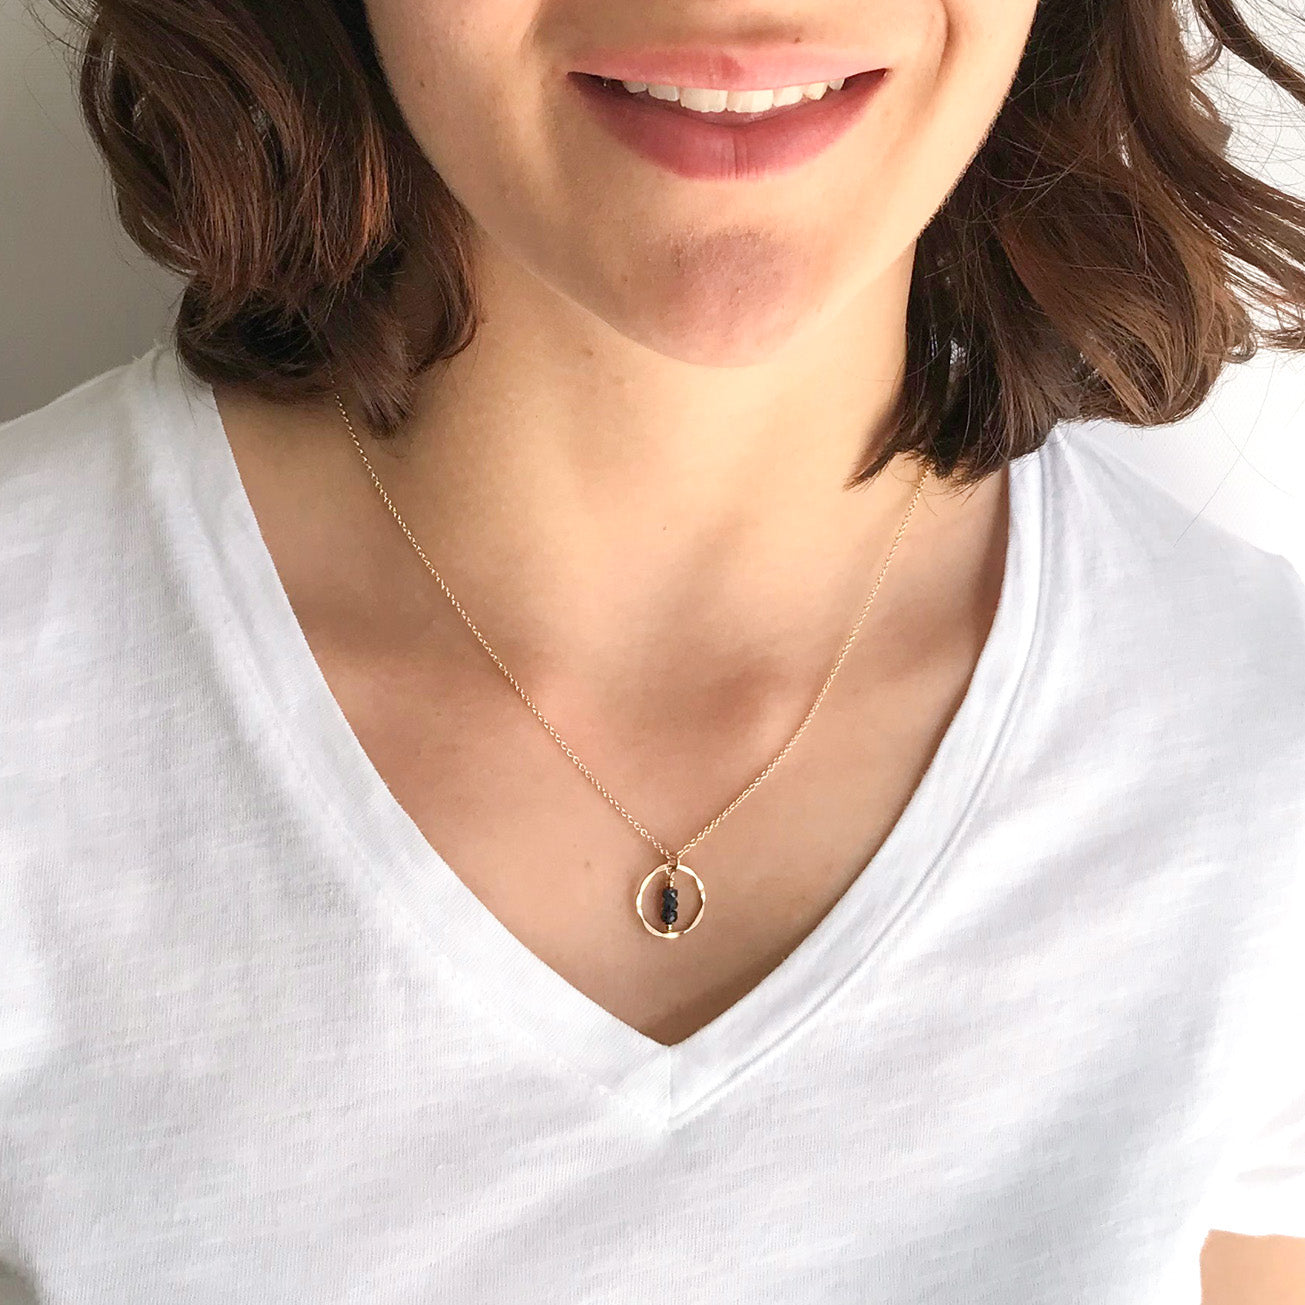 Minimalist Silver Birthstone Necklace – JOY by Corrine Smith